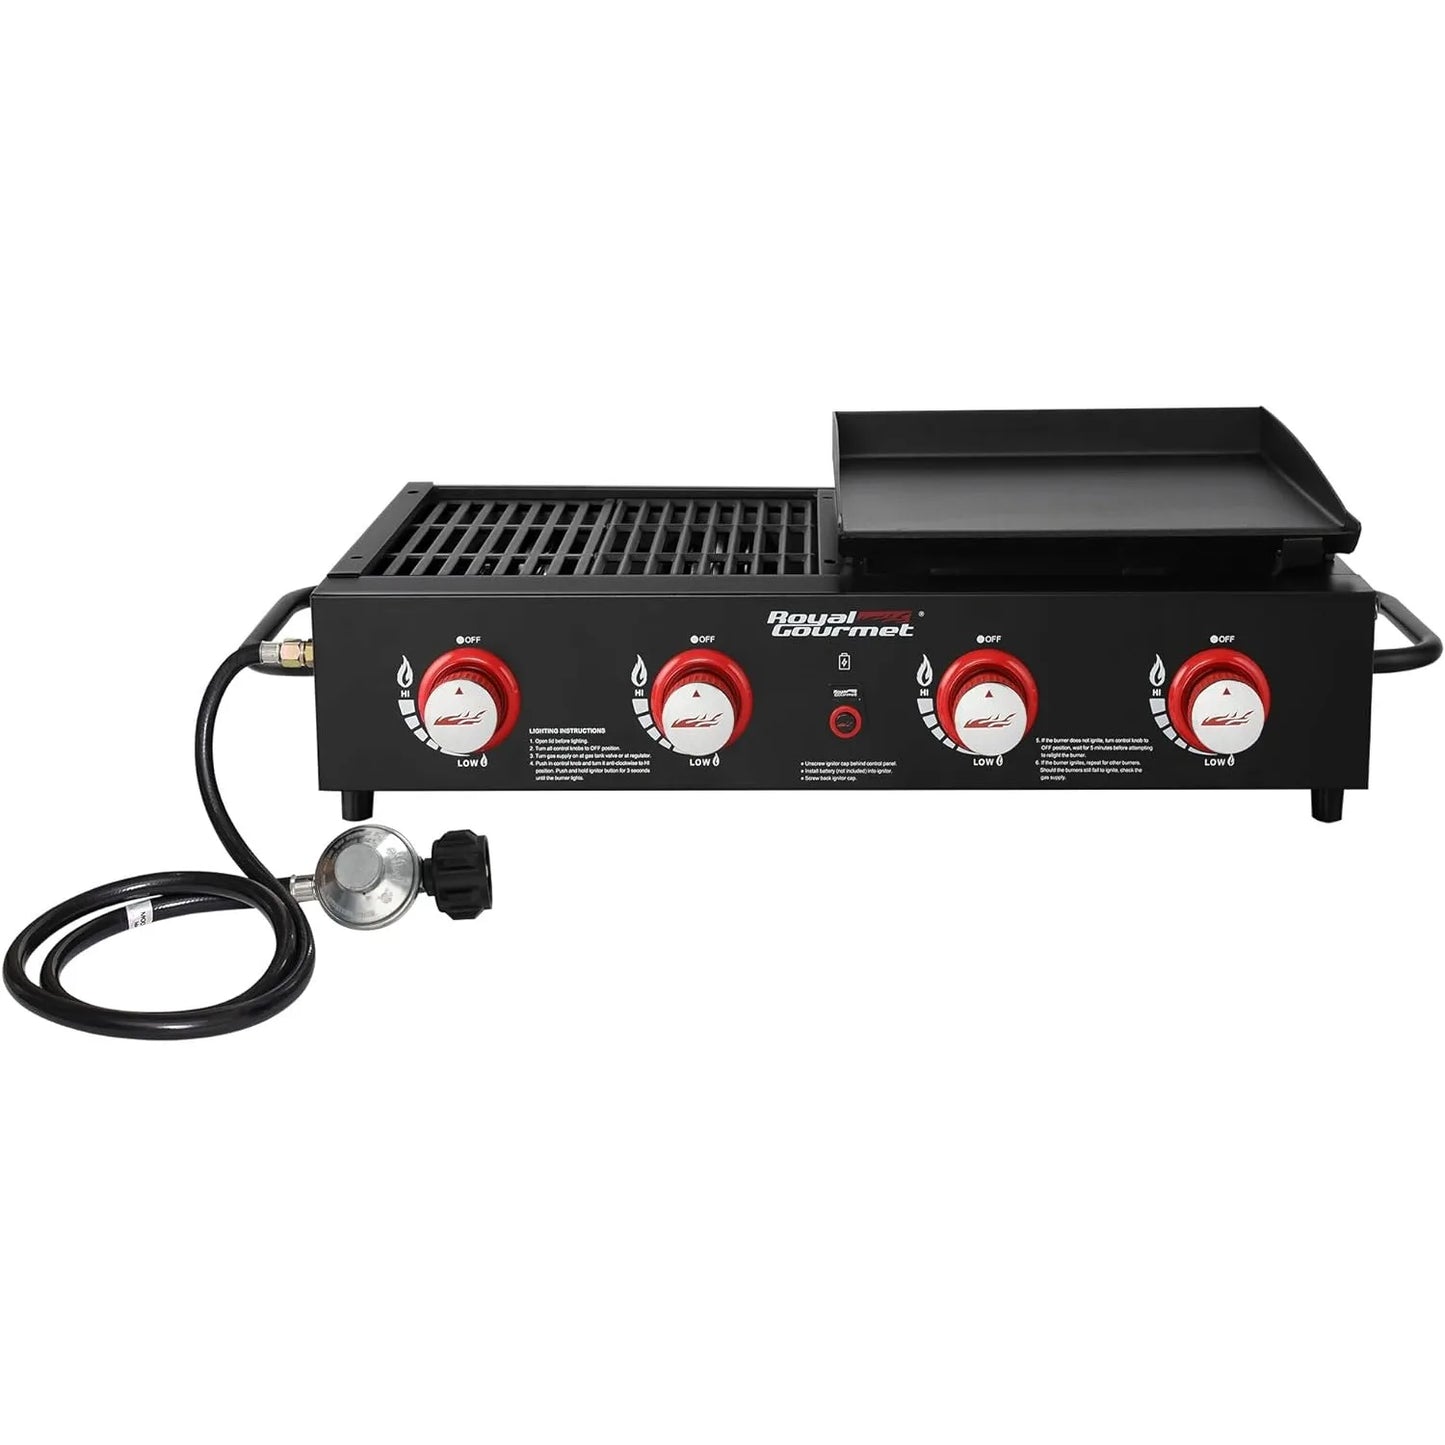 Tabletop Gas Grill Griddle, 4-Burner Portable Propane Grill Griddle Combo, 40,000 BTU, Black